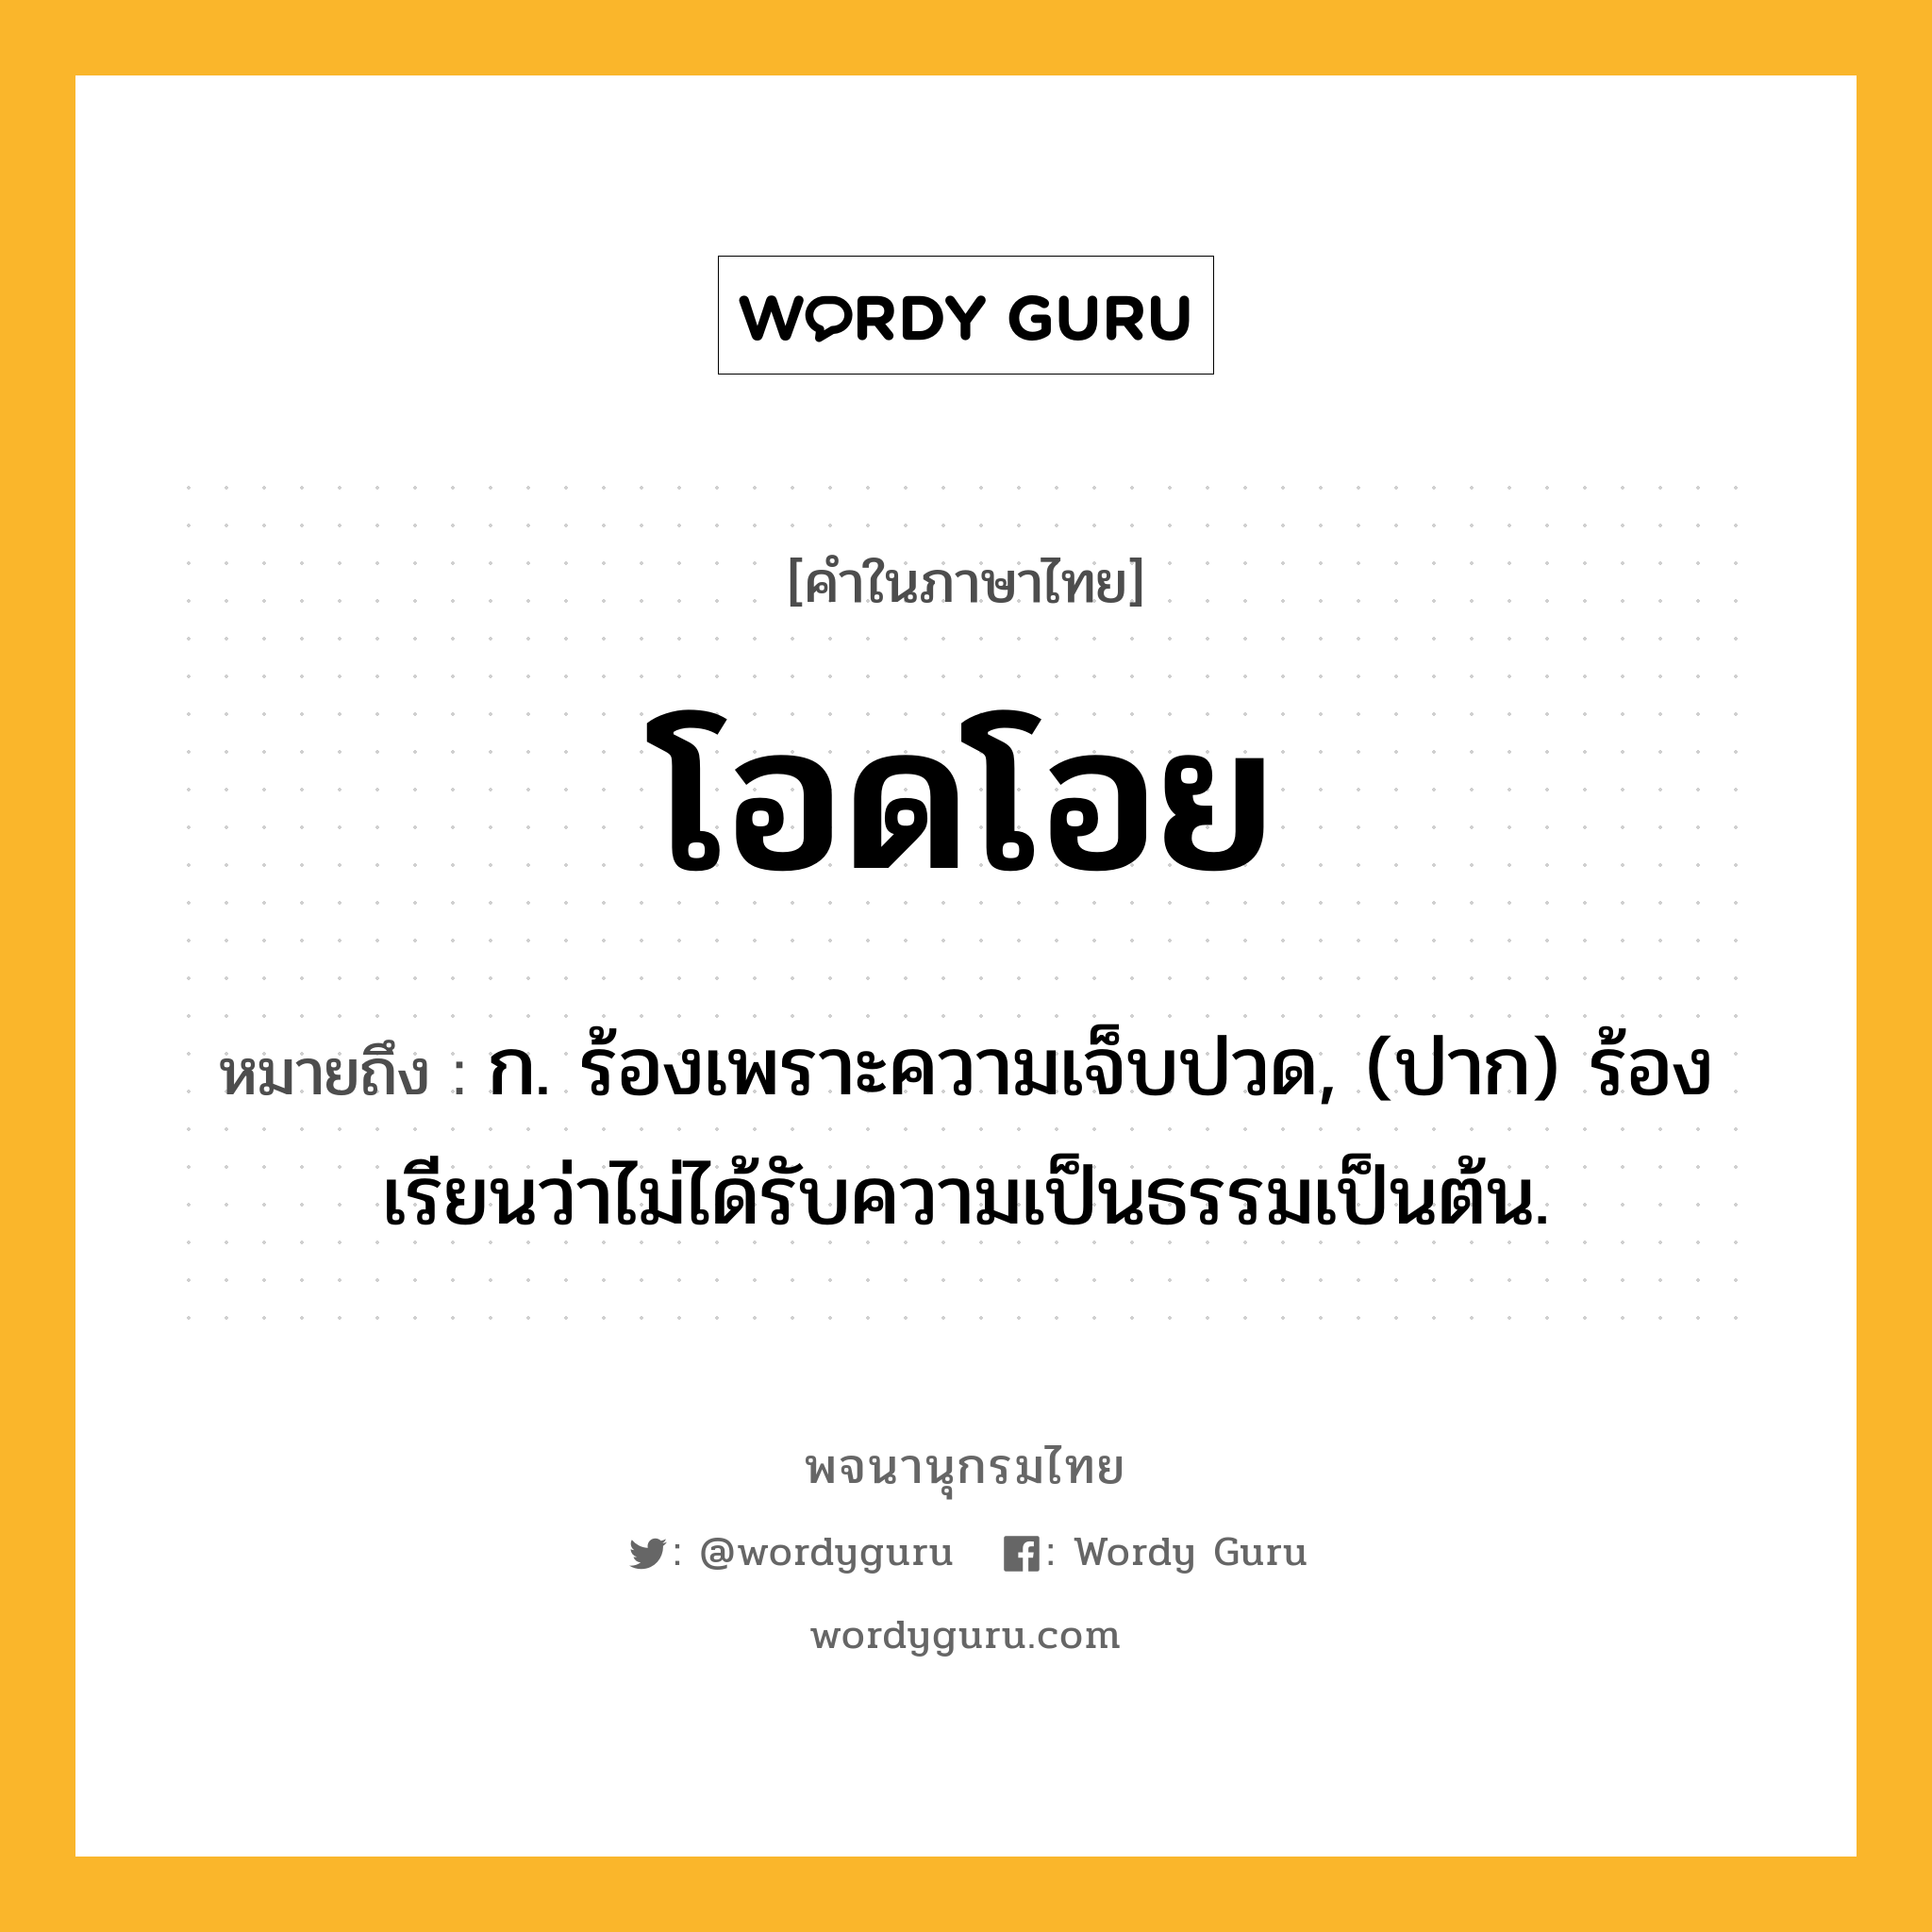 โอดโอย ความหมาย หมายถึงอะไร?, คำในภาษาไทย โอดโอย หมายถึง ก. ร้องเพราะความเจ็บปวด, (ปาก) ร้องเรียนว่าไม่ได้รับความเป็นธรรมเป็นต้น.